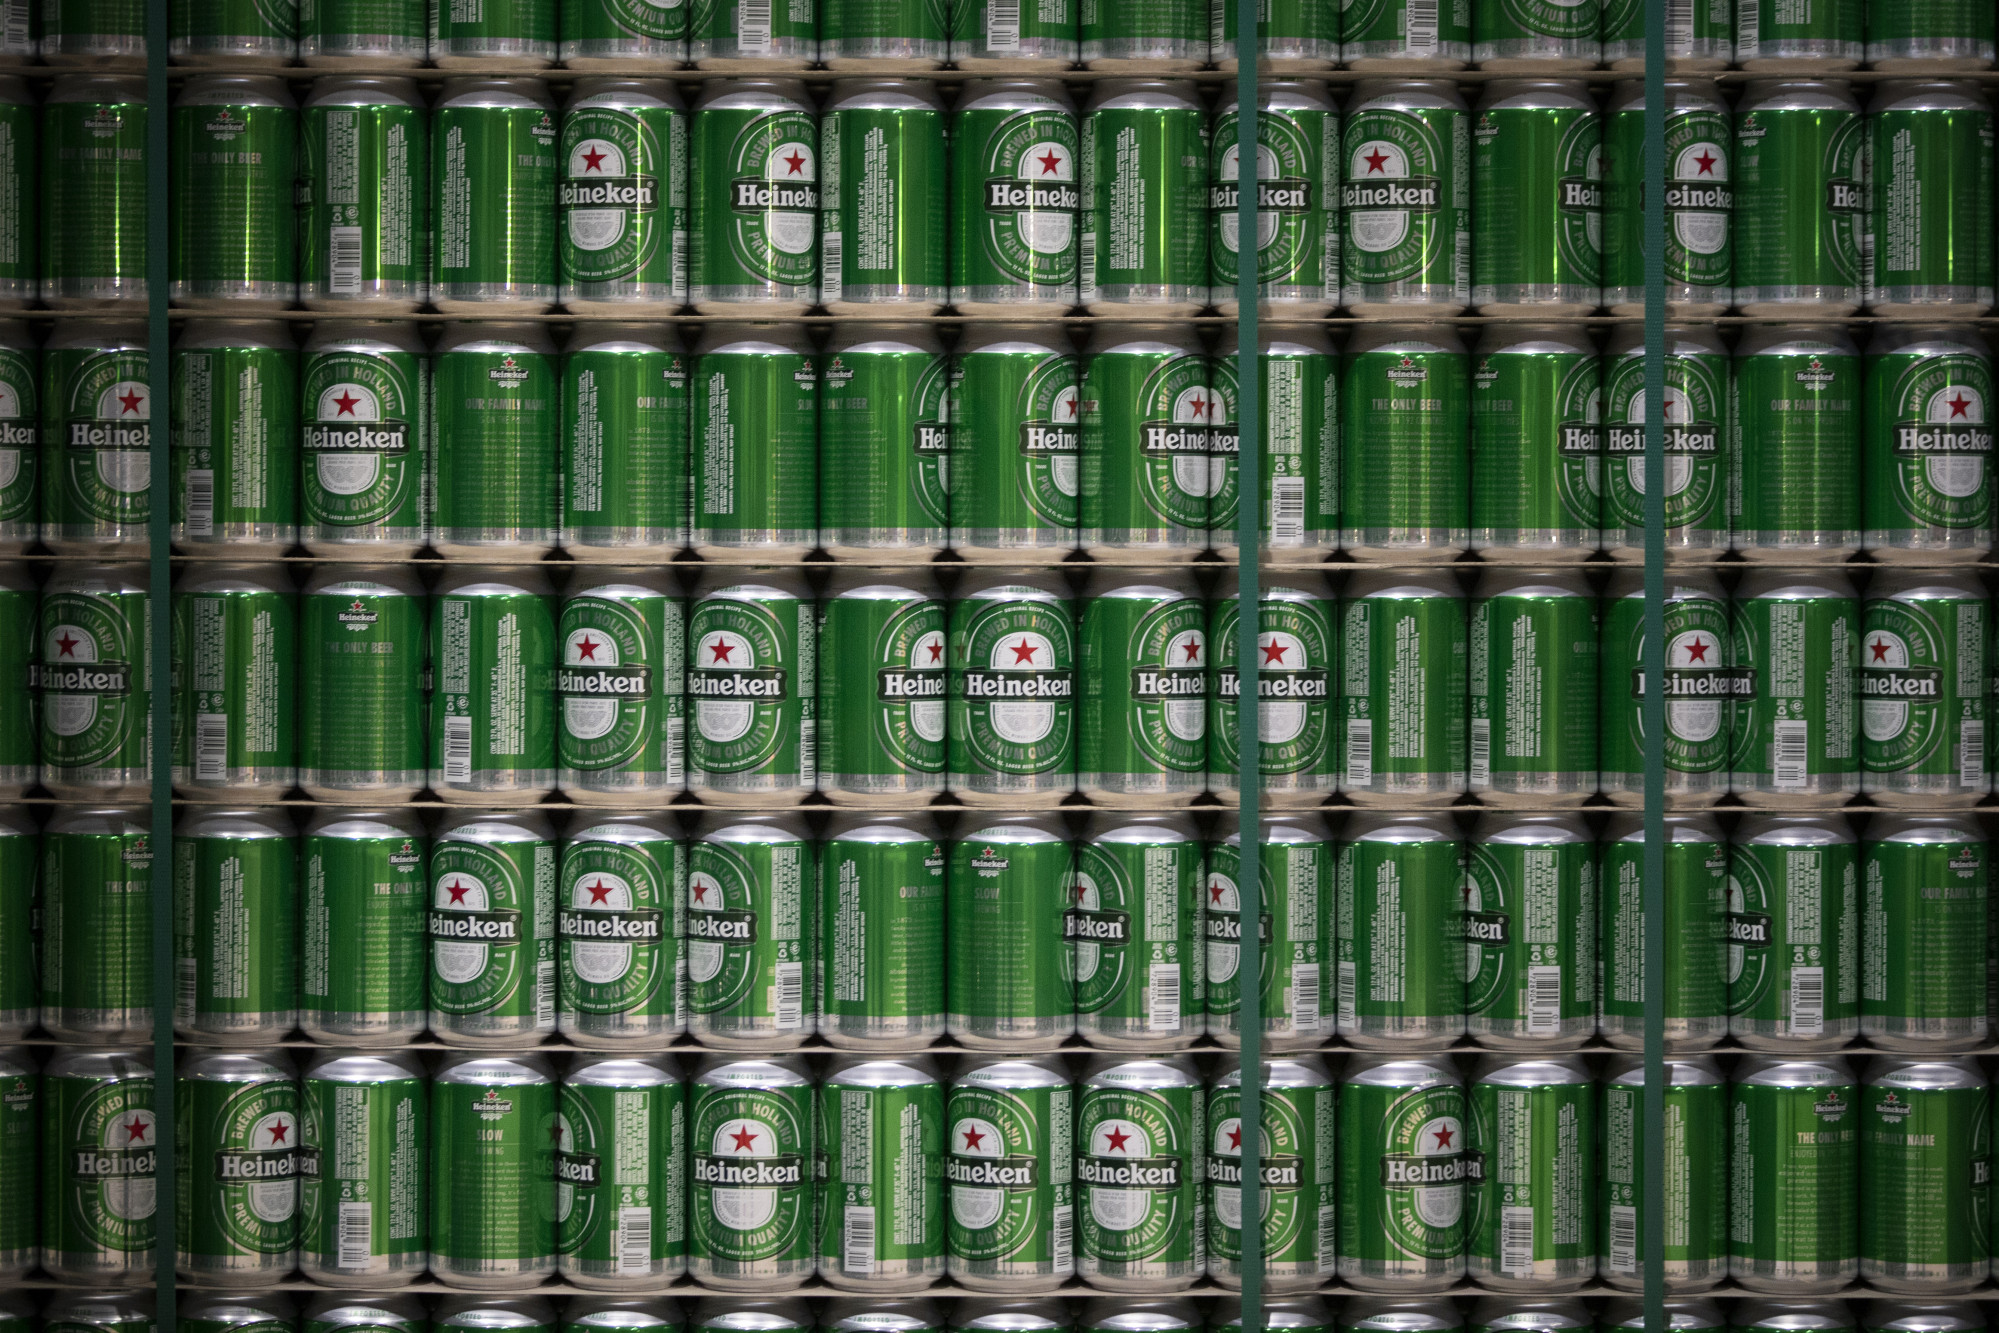 Heineken to Stop Selling Desperados Tequila-Flavored Beer in the